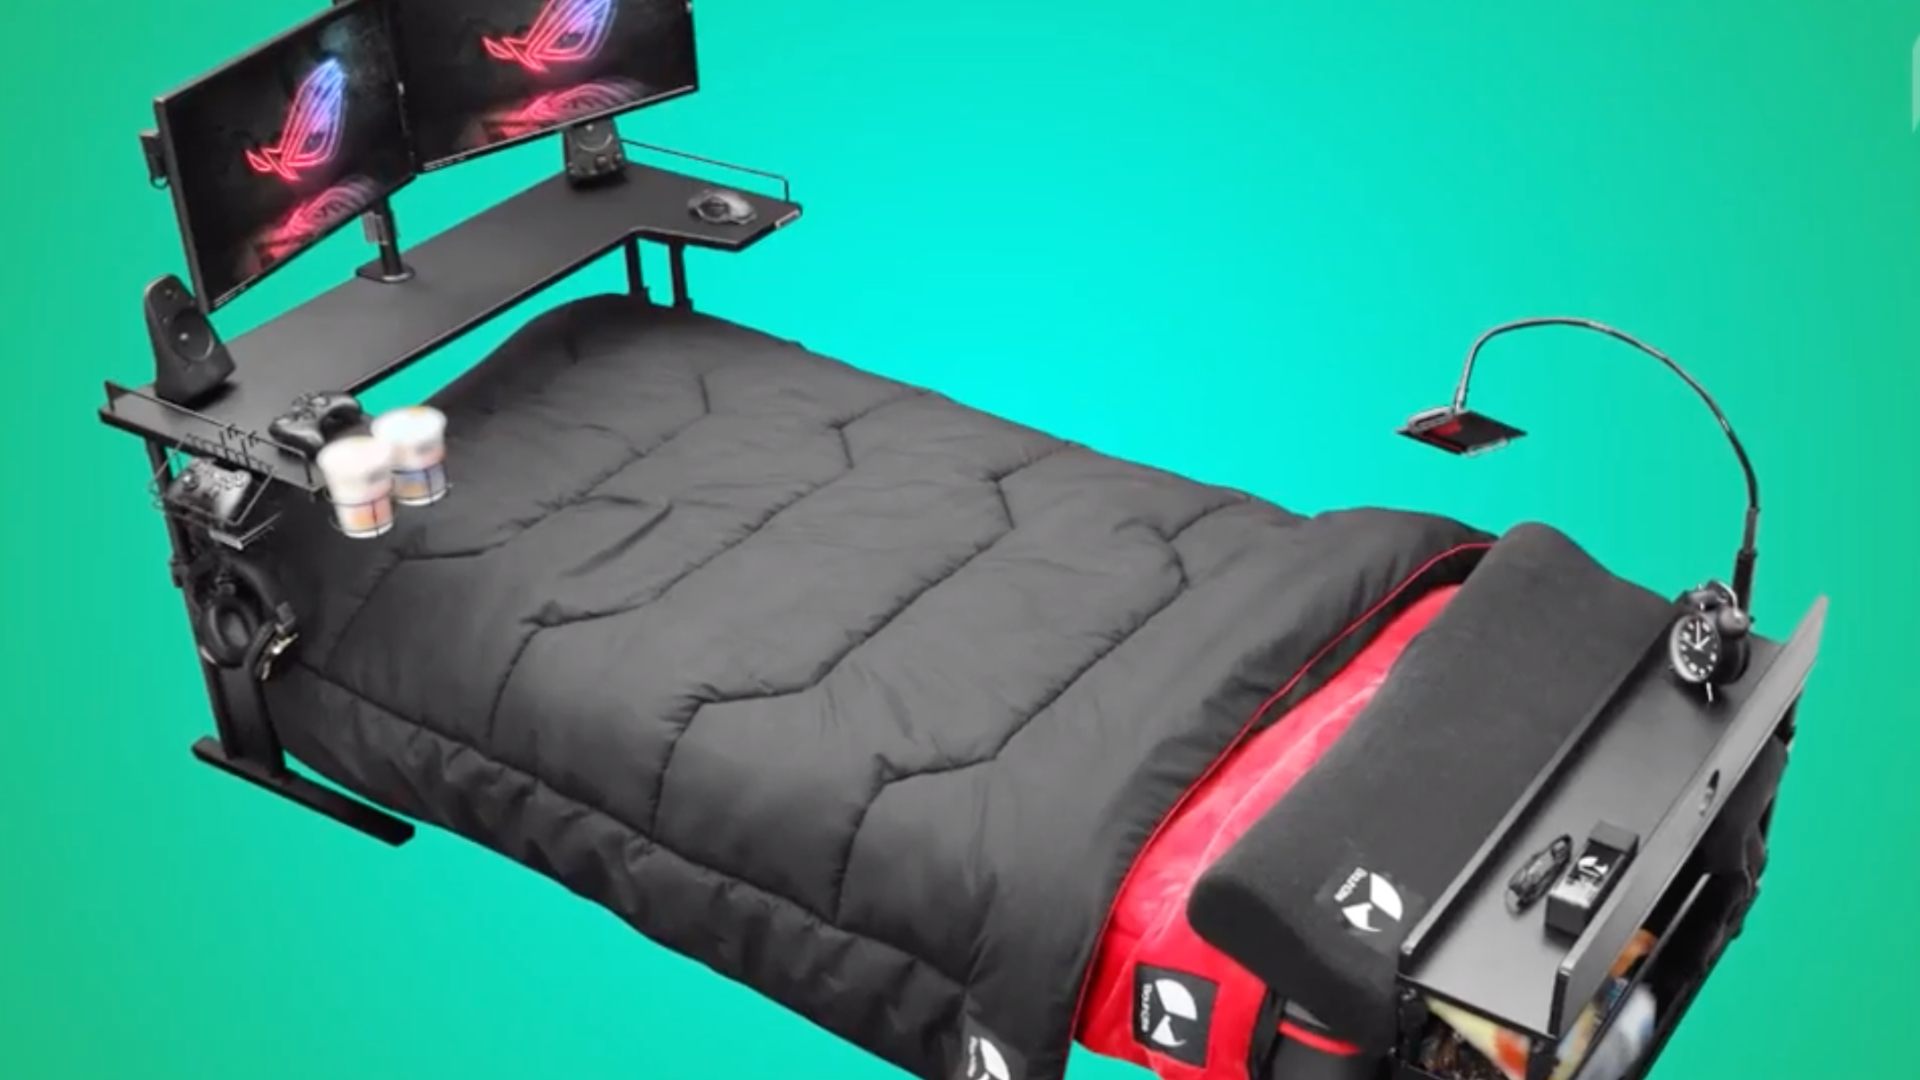 Le monde a-t-il besoin d'un lit pour gamers ? - Numerama